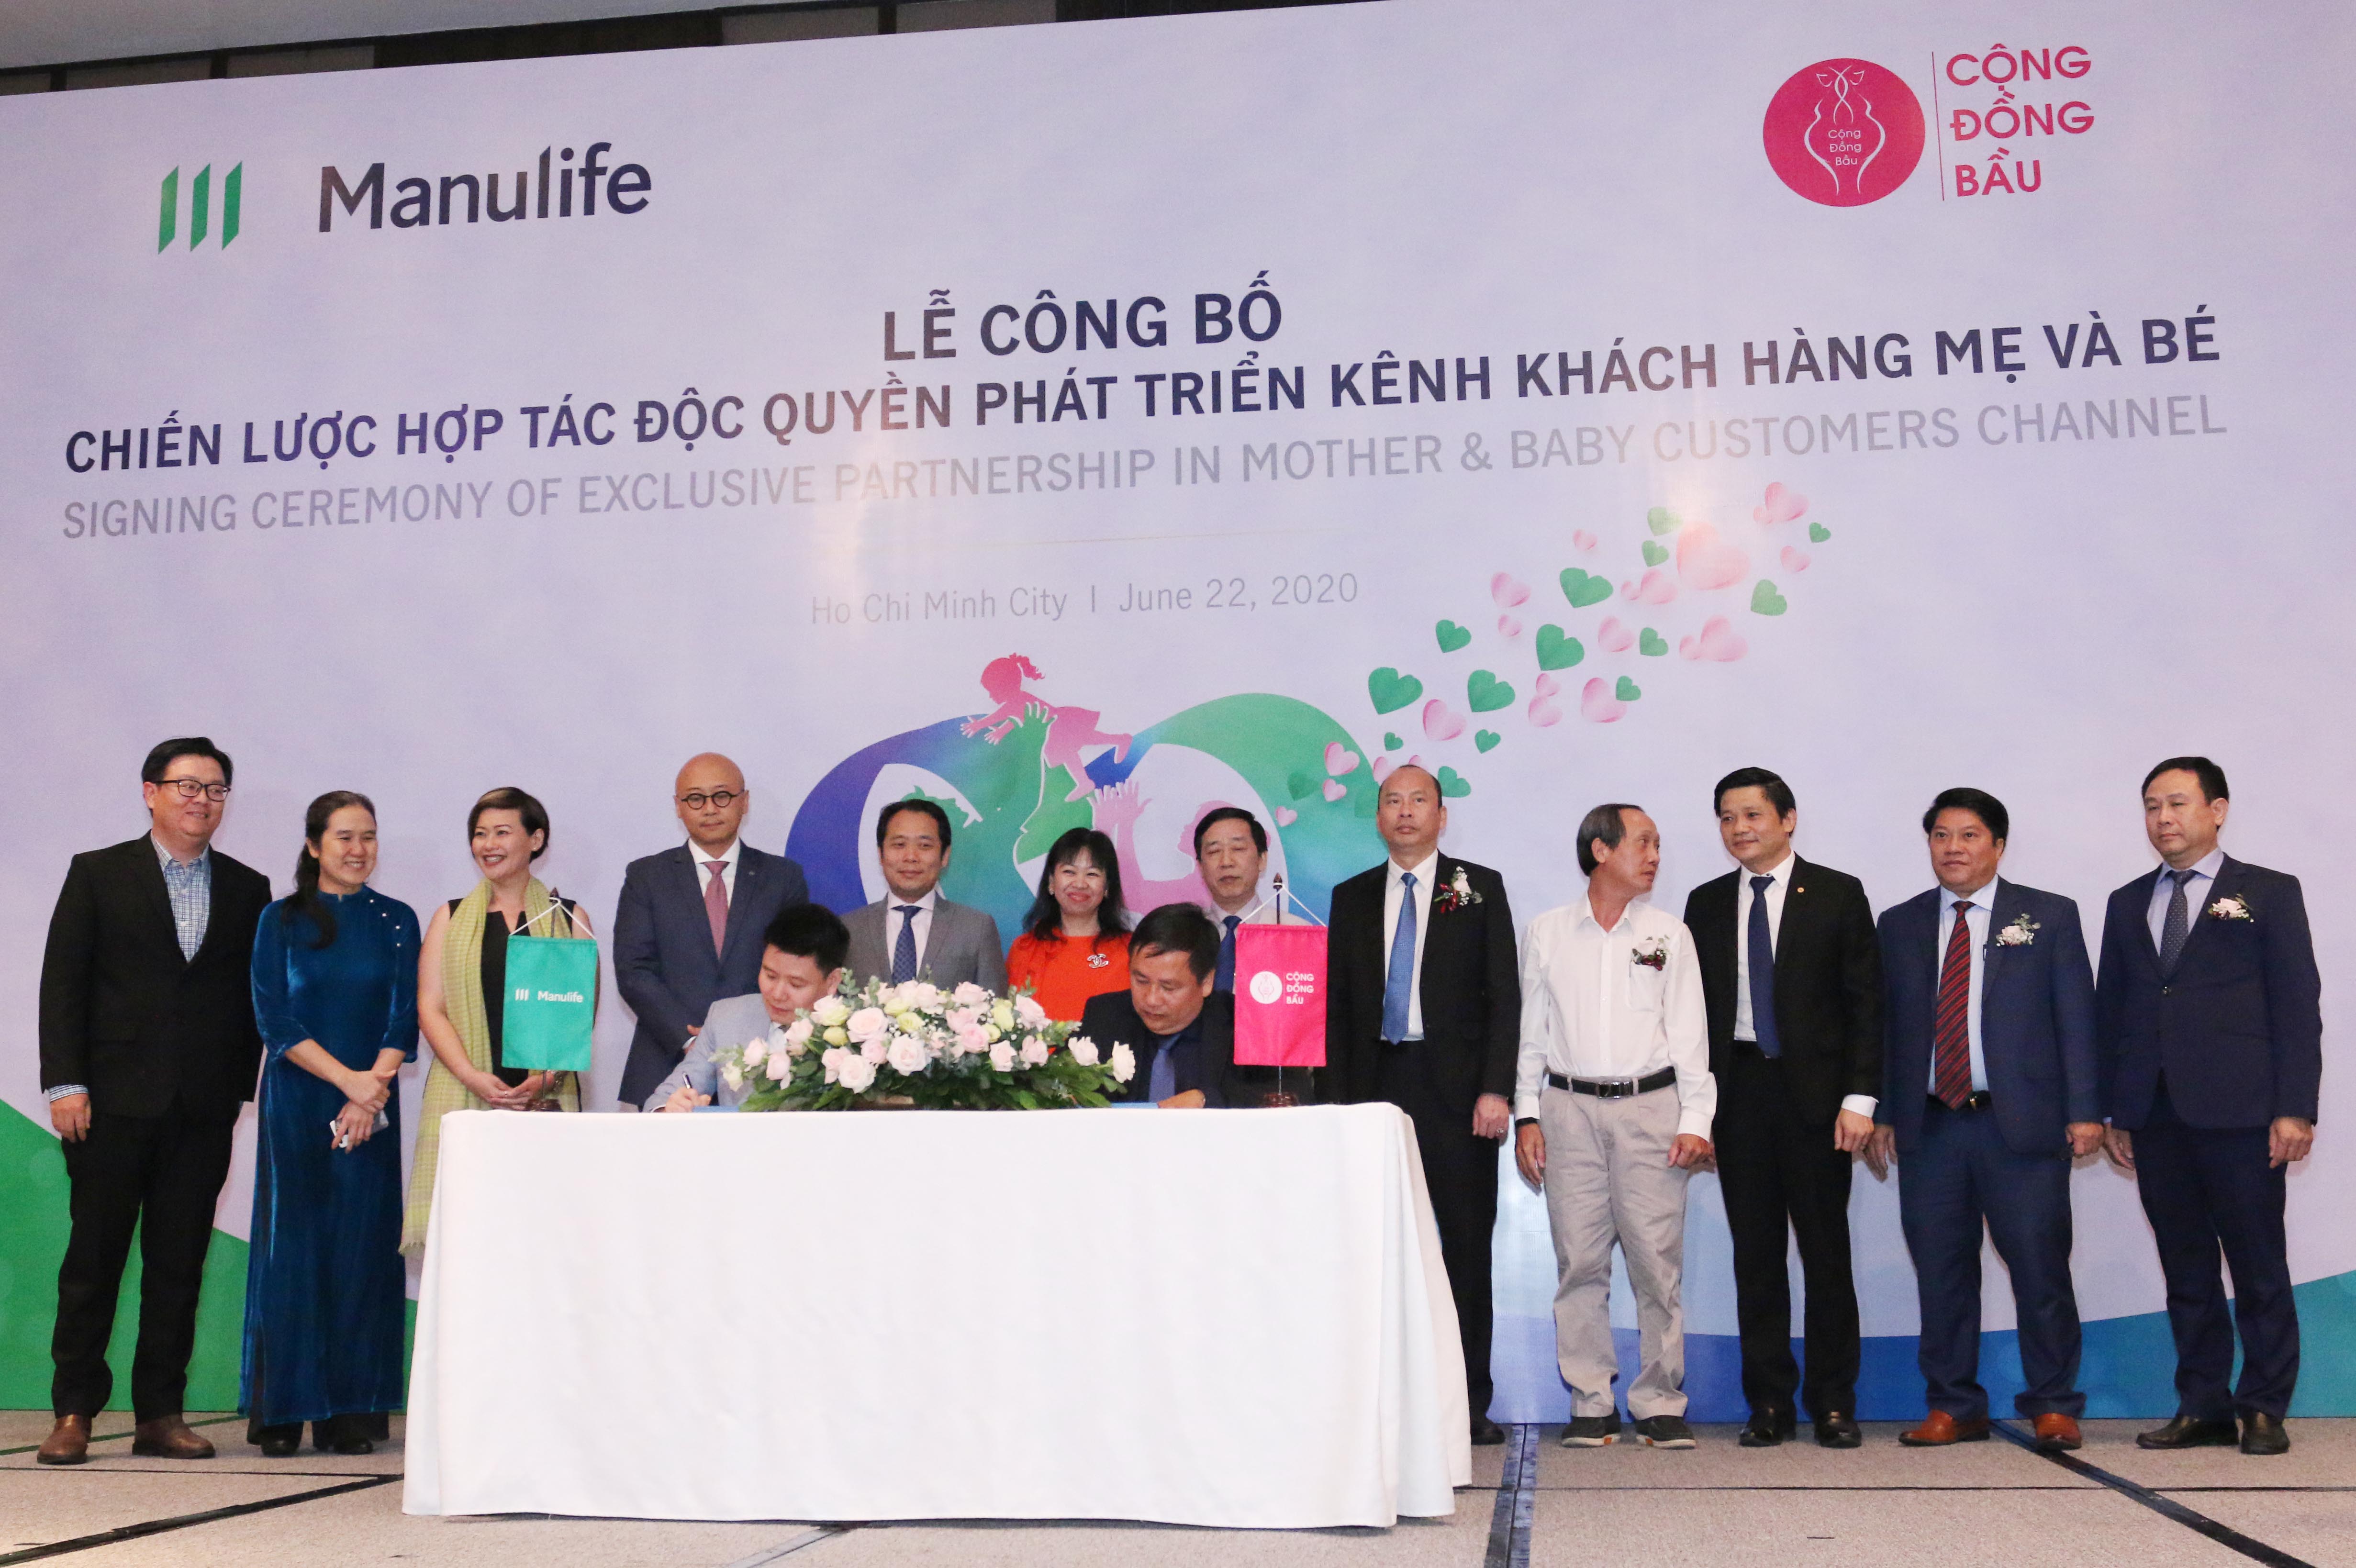 Đại diện Manulife Việt Nam và Cộng Đồng Bầu ký kết hợp tác độc quyền phát triển kênh khách hành Mẹ và Bé